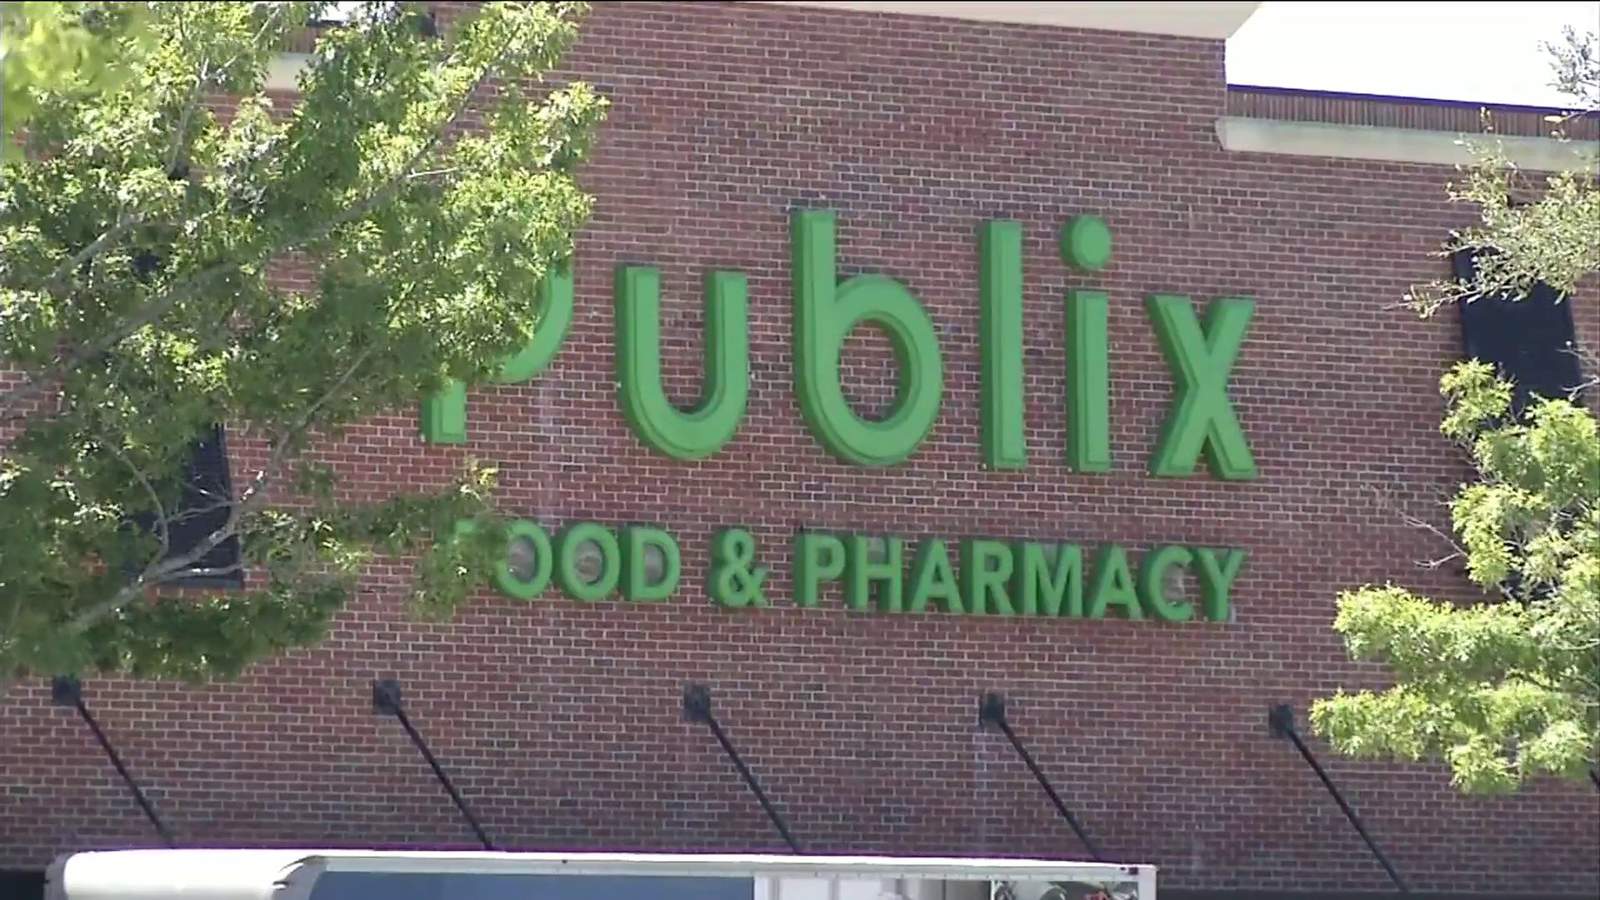 Publix Supermarket extends pharmacy hours